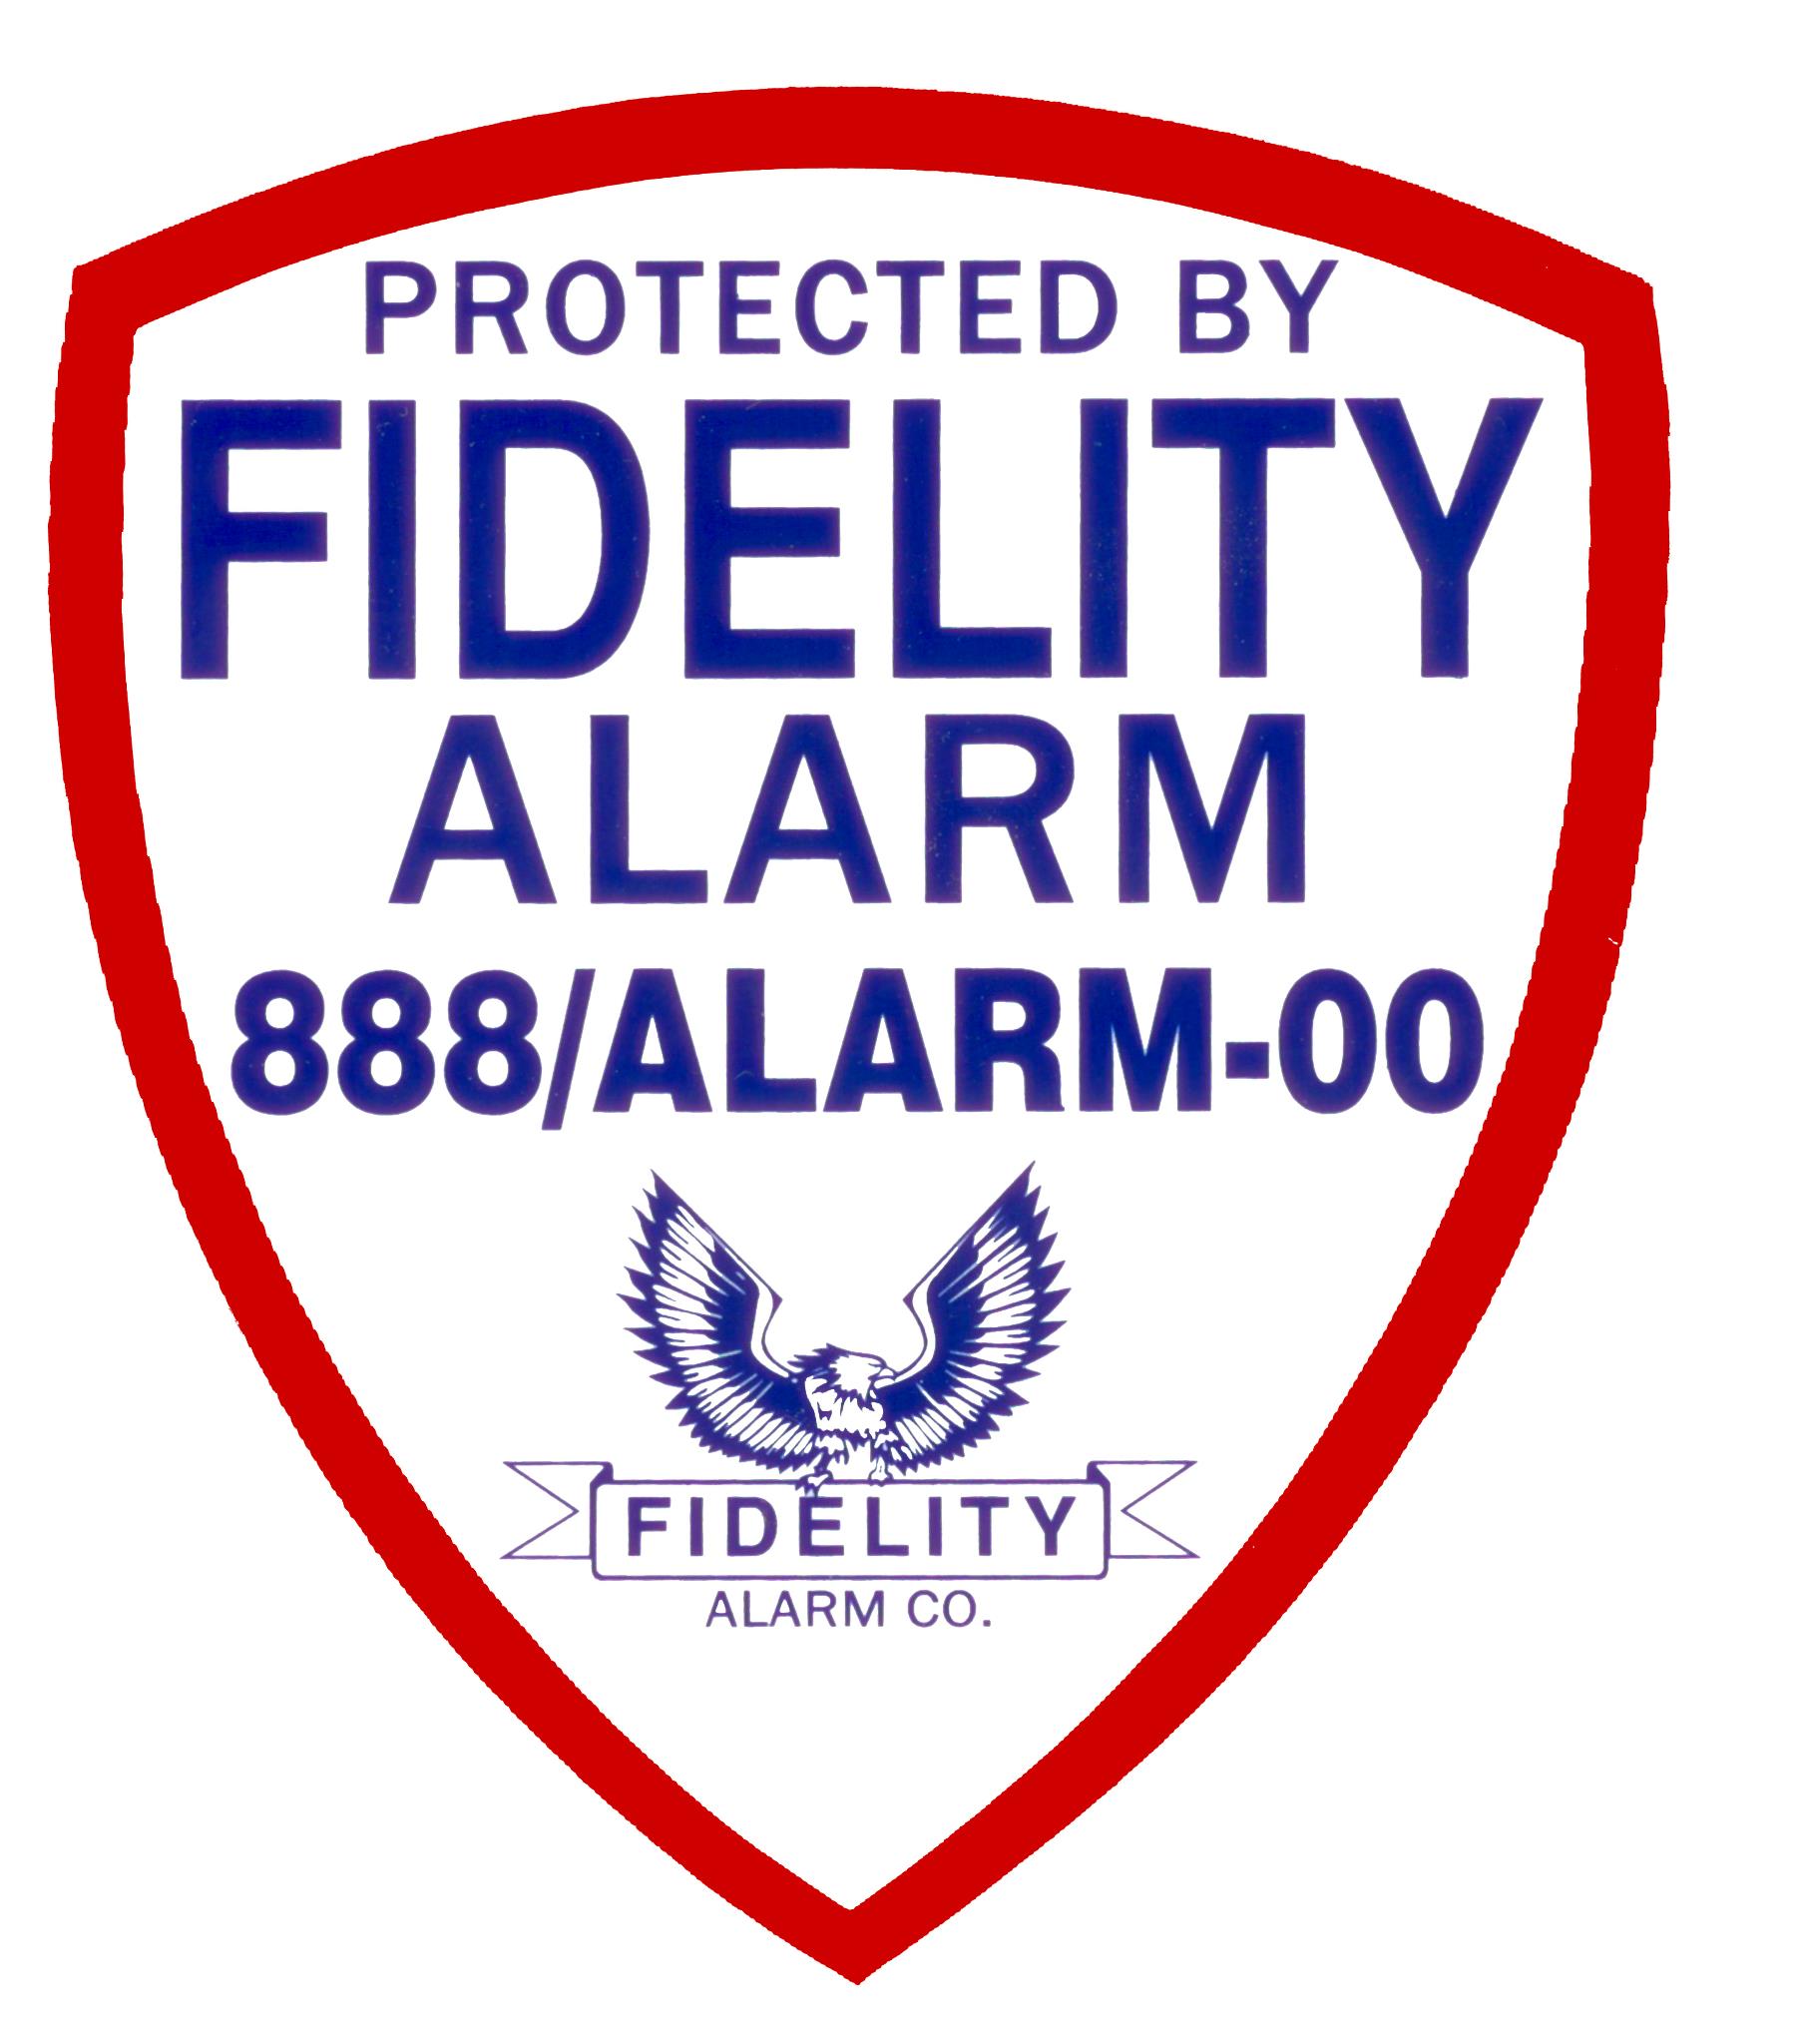 Fidelity Alarm